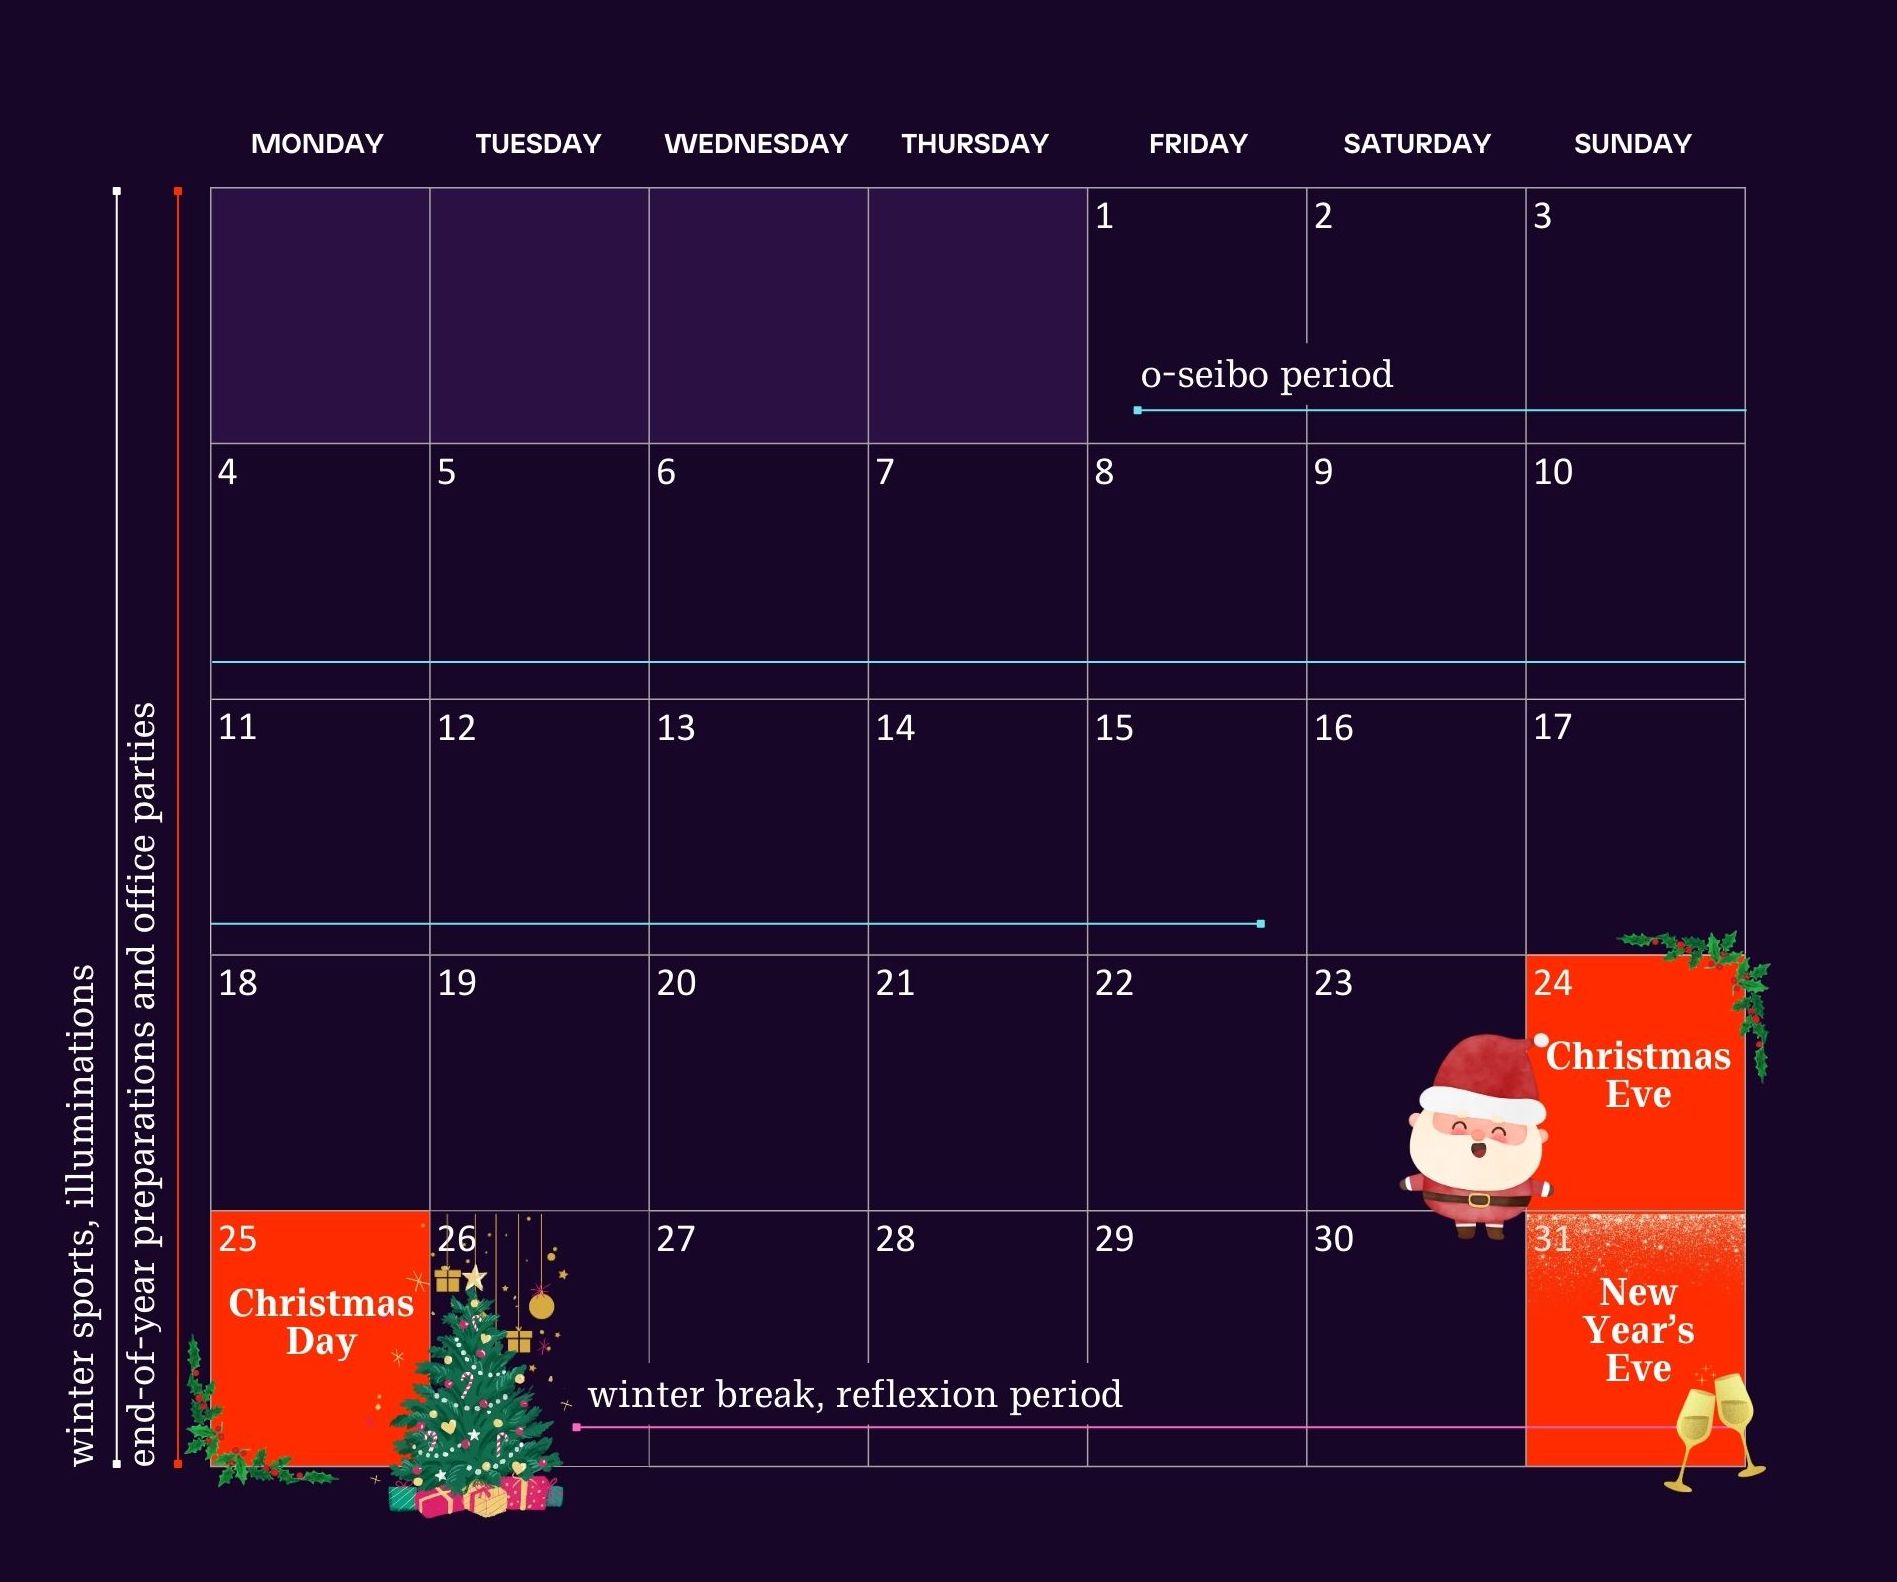 Japanese marketing calendar for December.